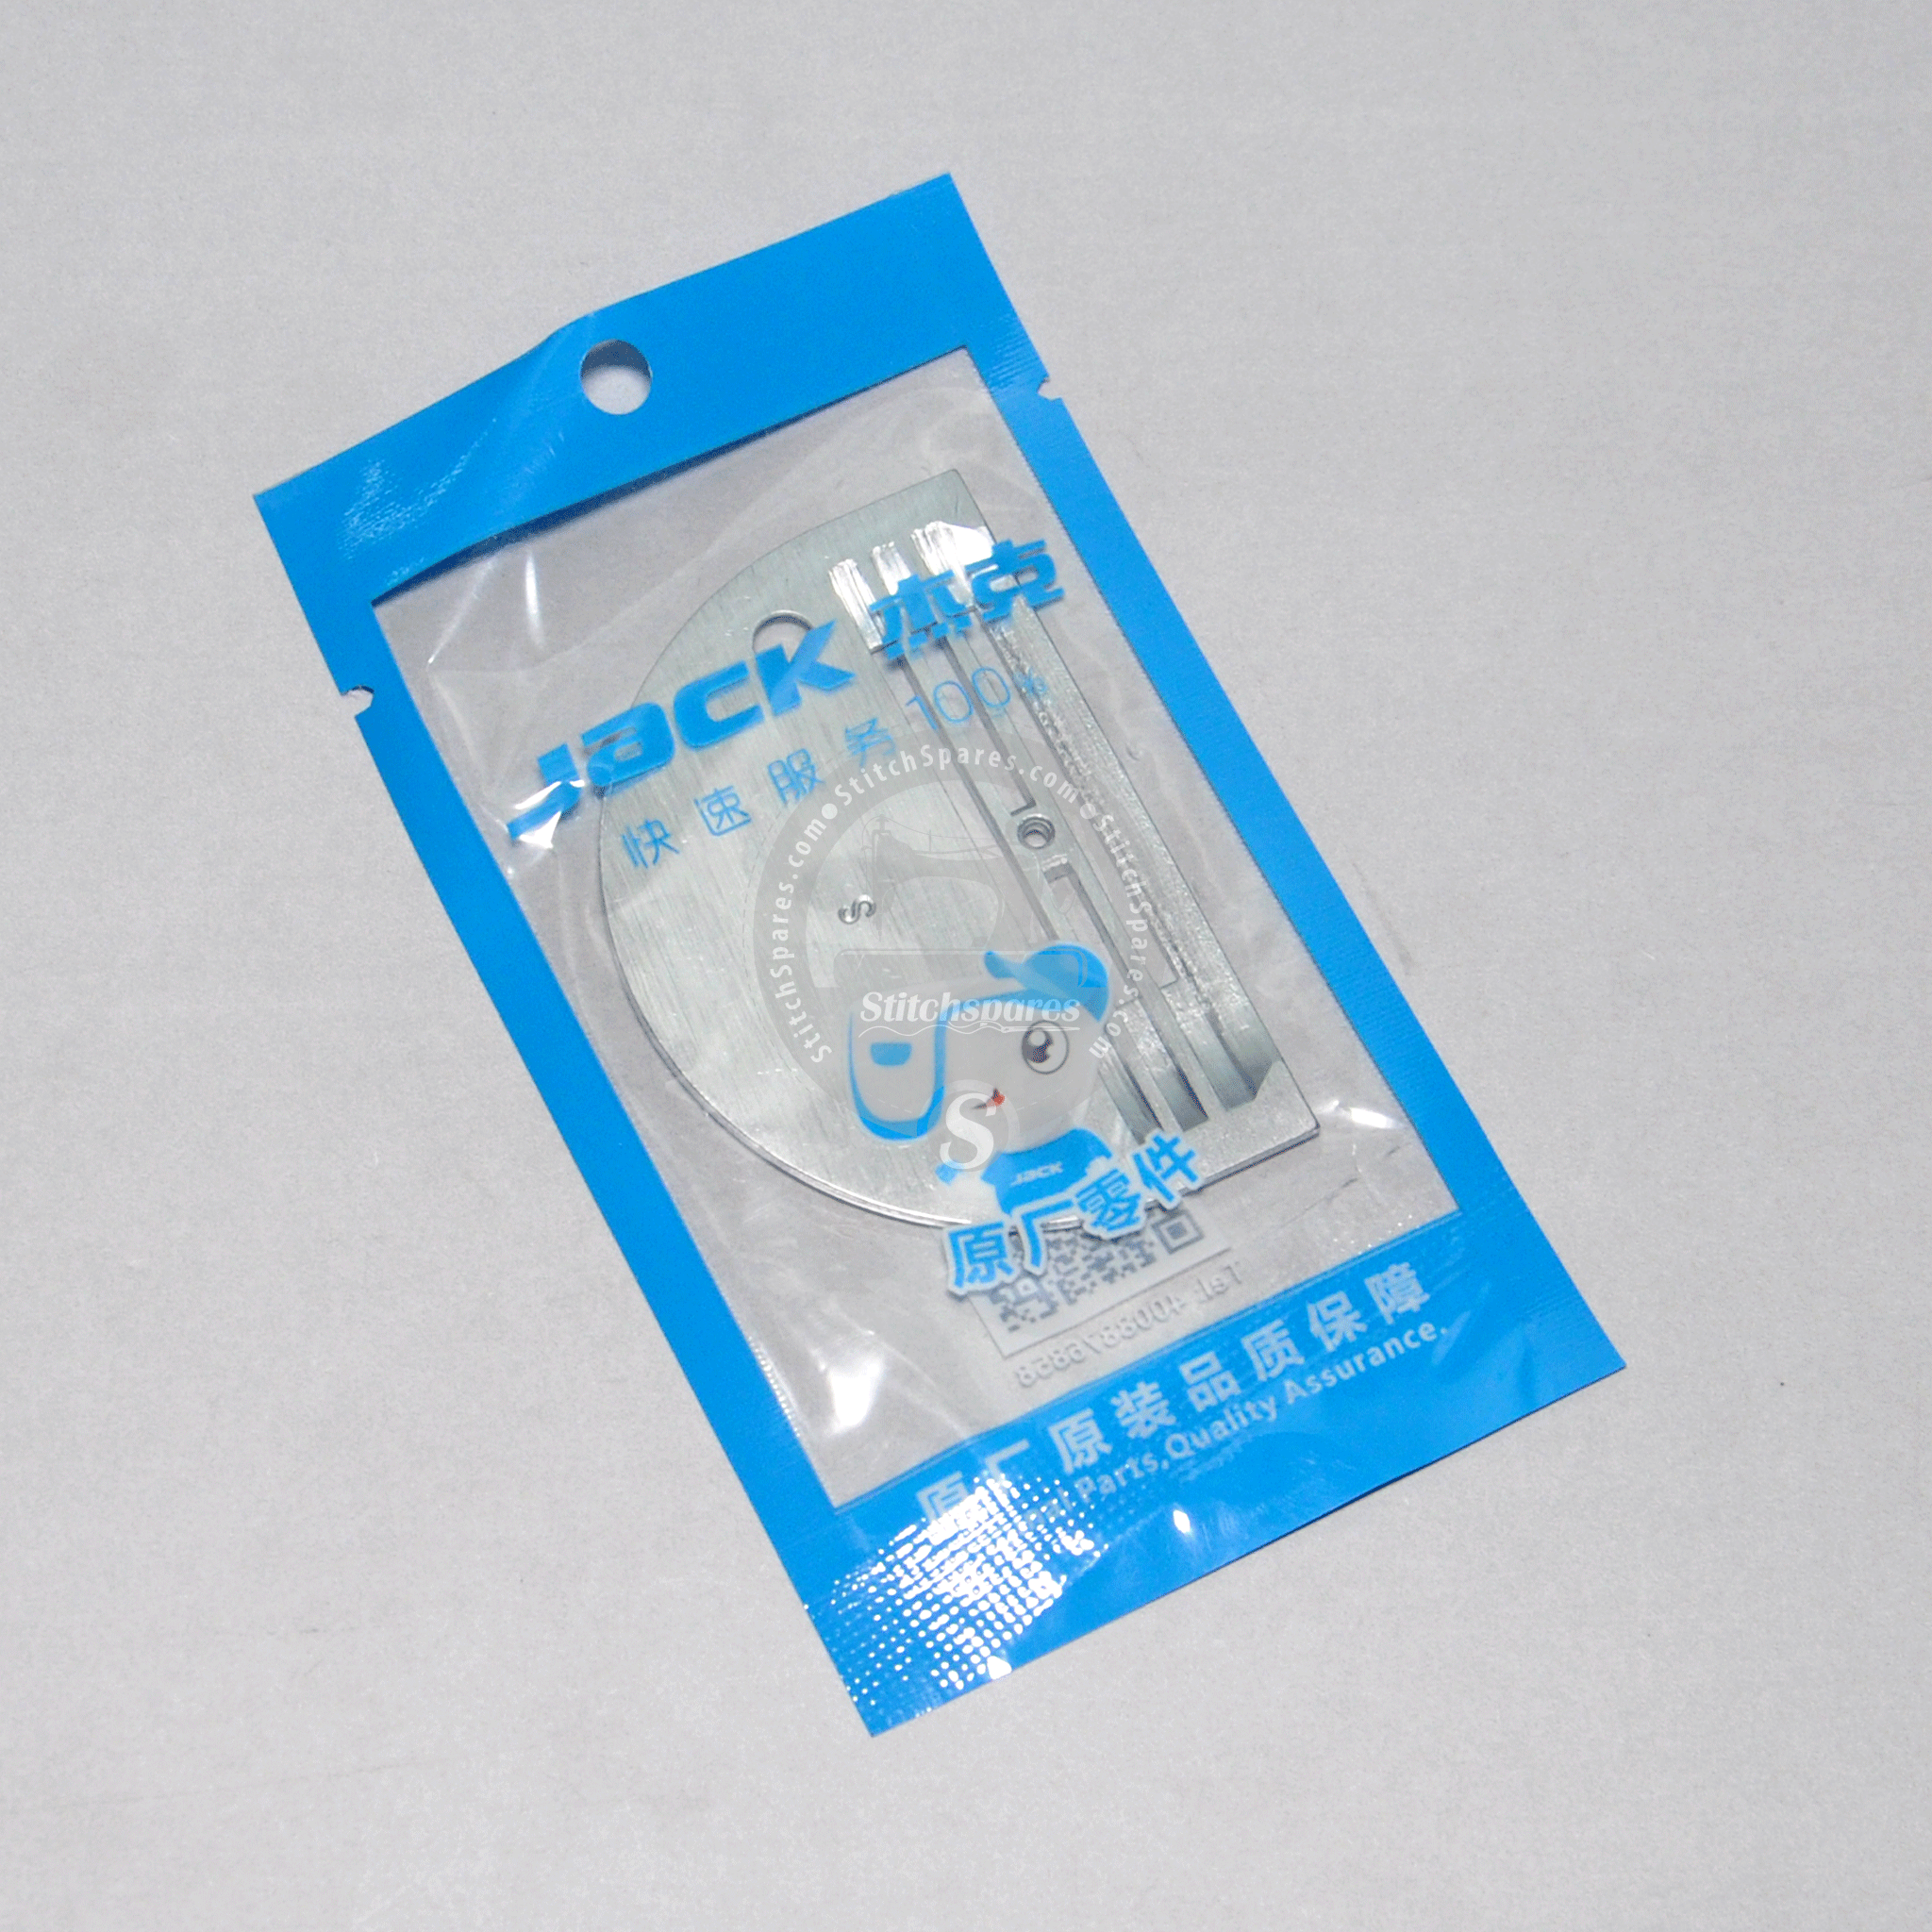 # 11414006 Placa de aguja para repuestos para máquinas de coser industriales JACK F4